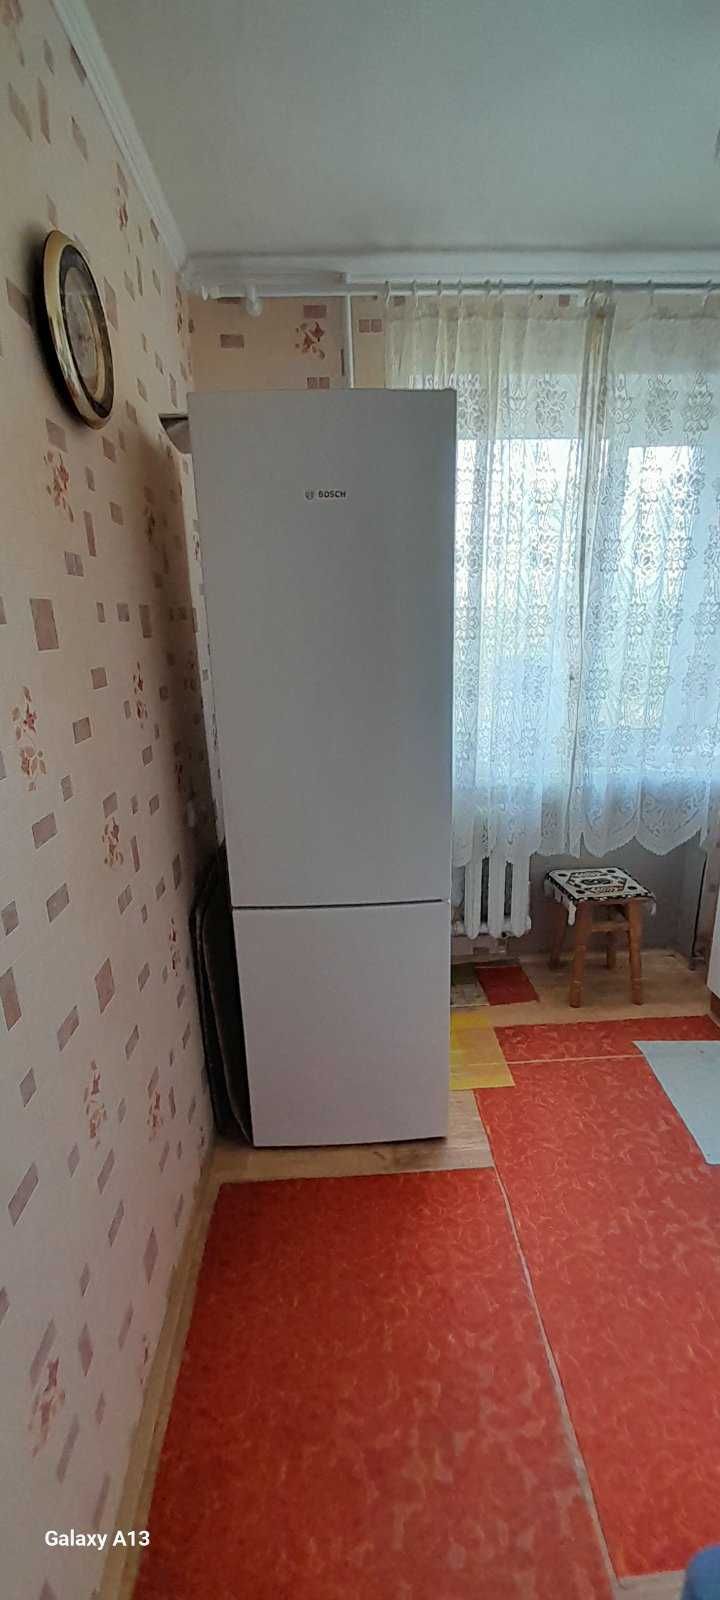 Продам 1 комнатную квартиру на ул.Саранской в районе ж/м Фрунзенский